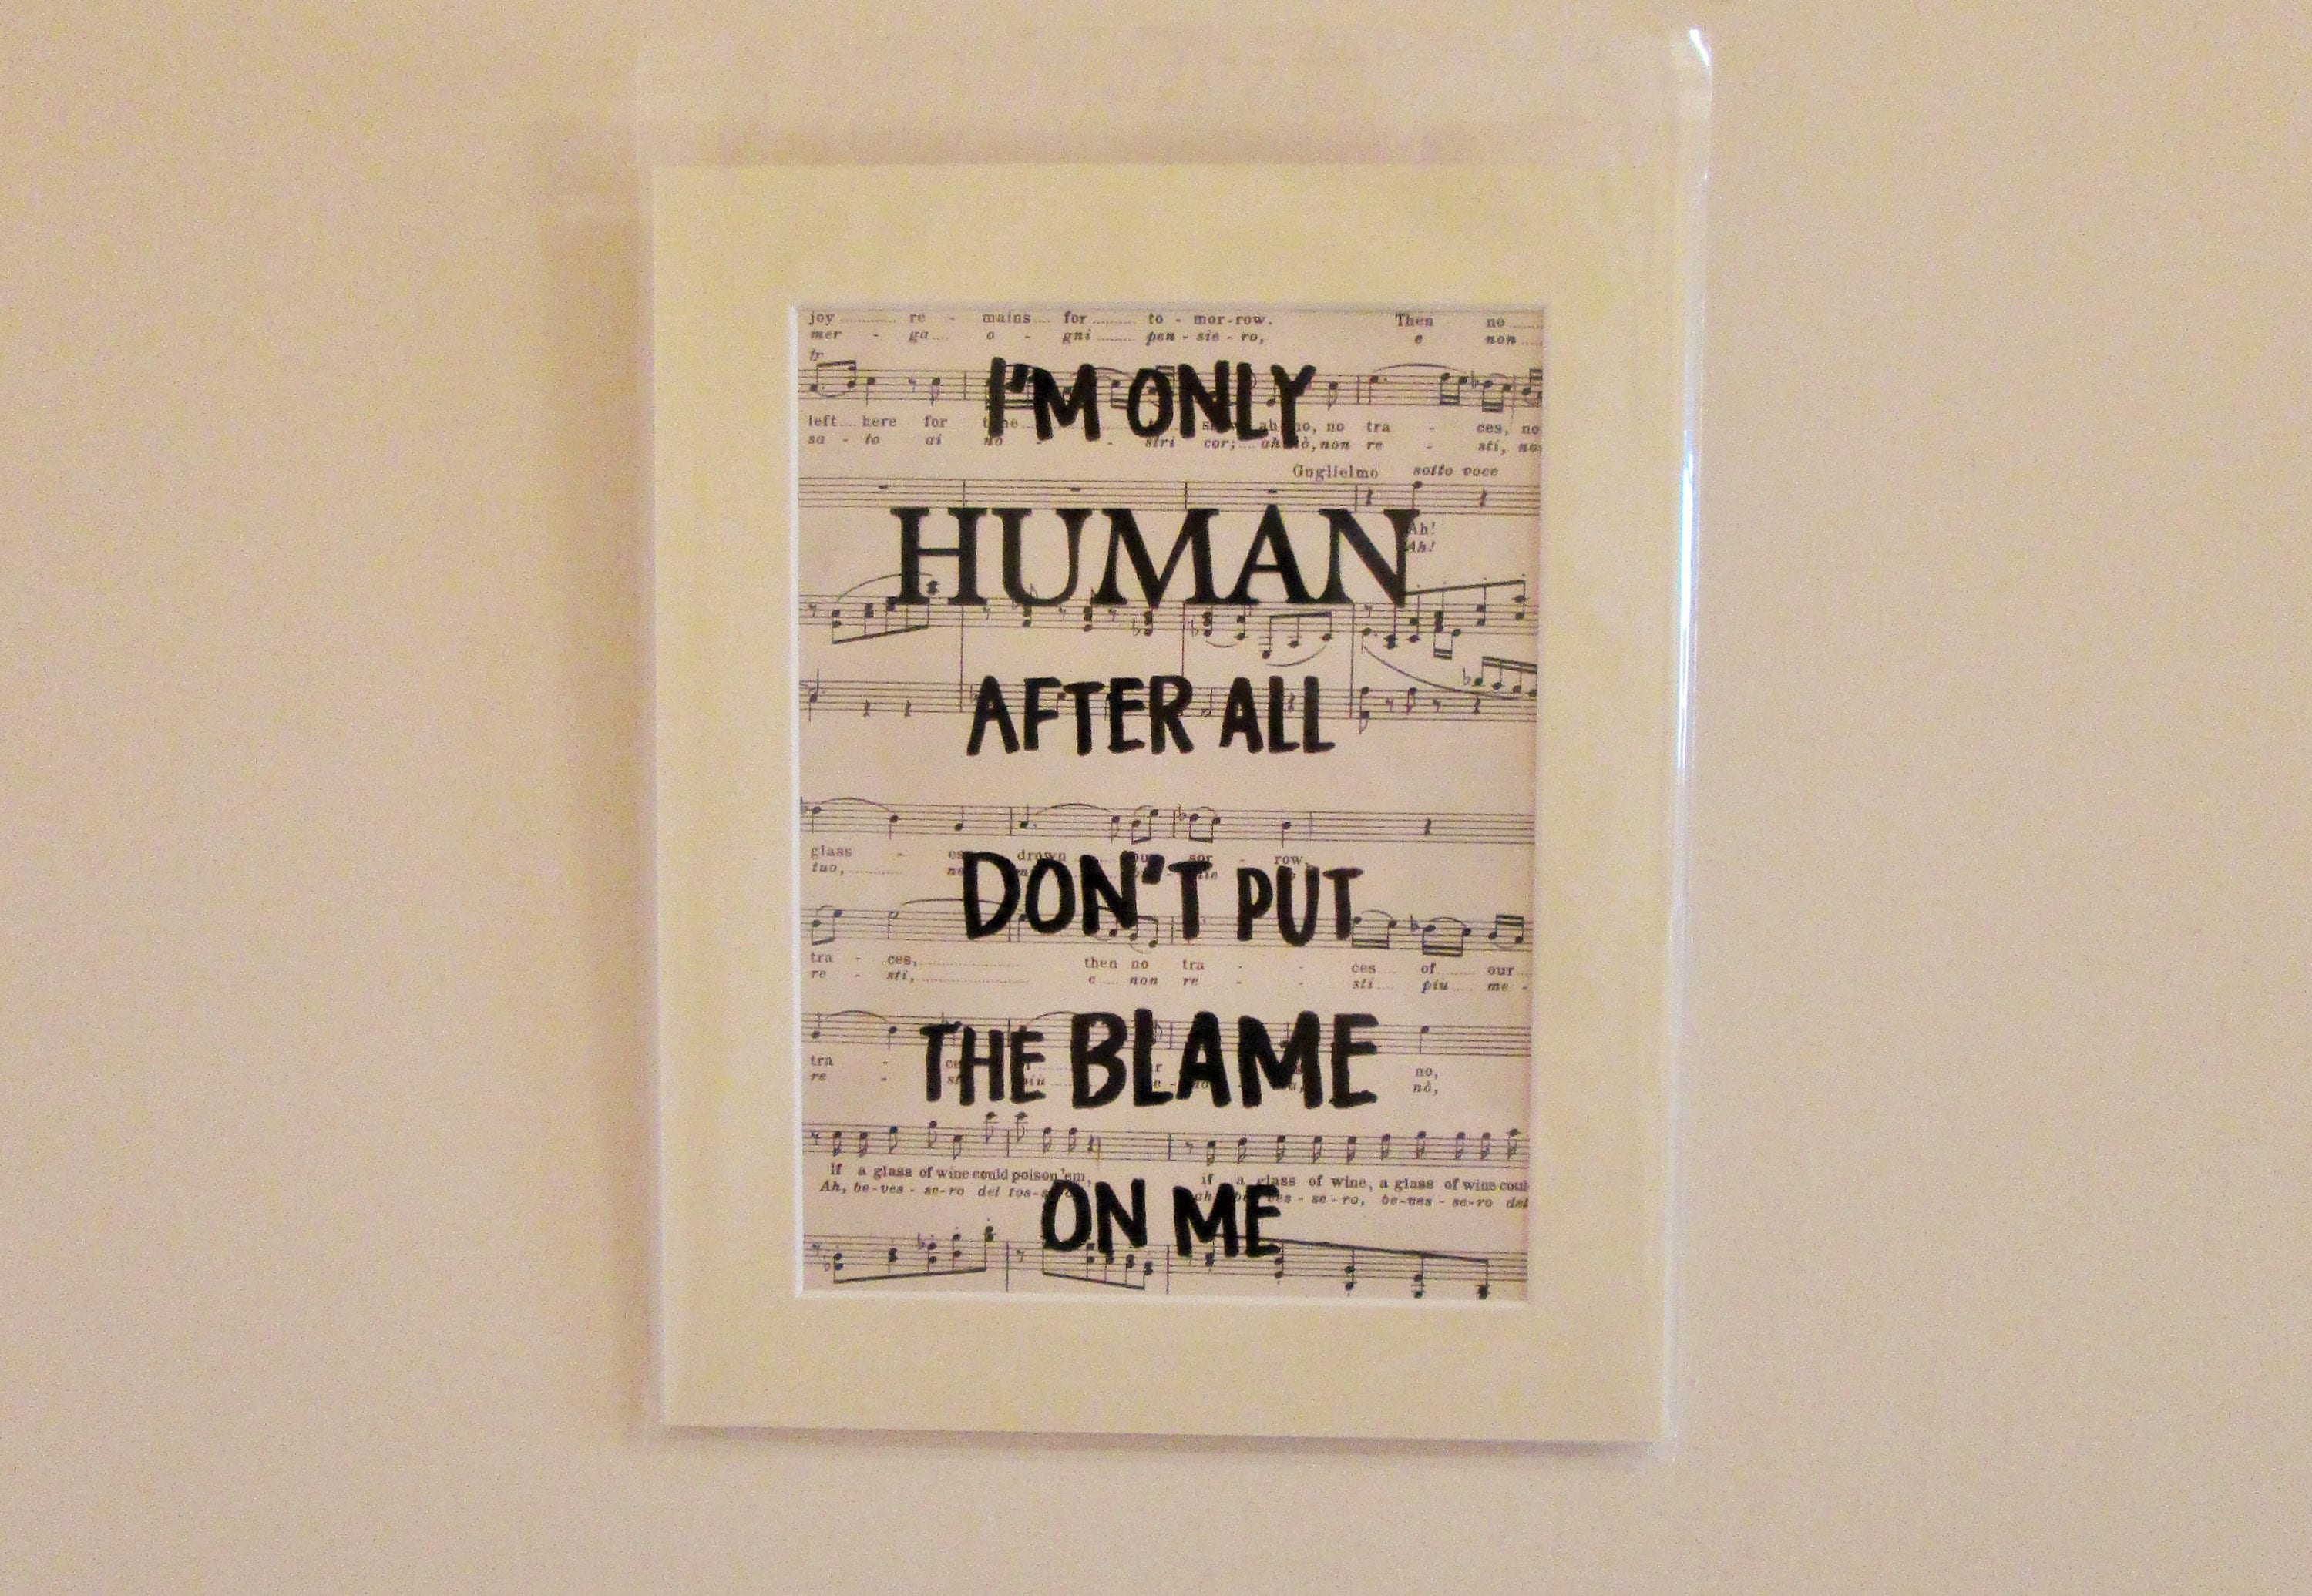 Only human after all. I'M only Human after all текст. I am only Human after all. I am only Human кухня. Human after all.